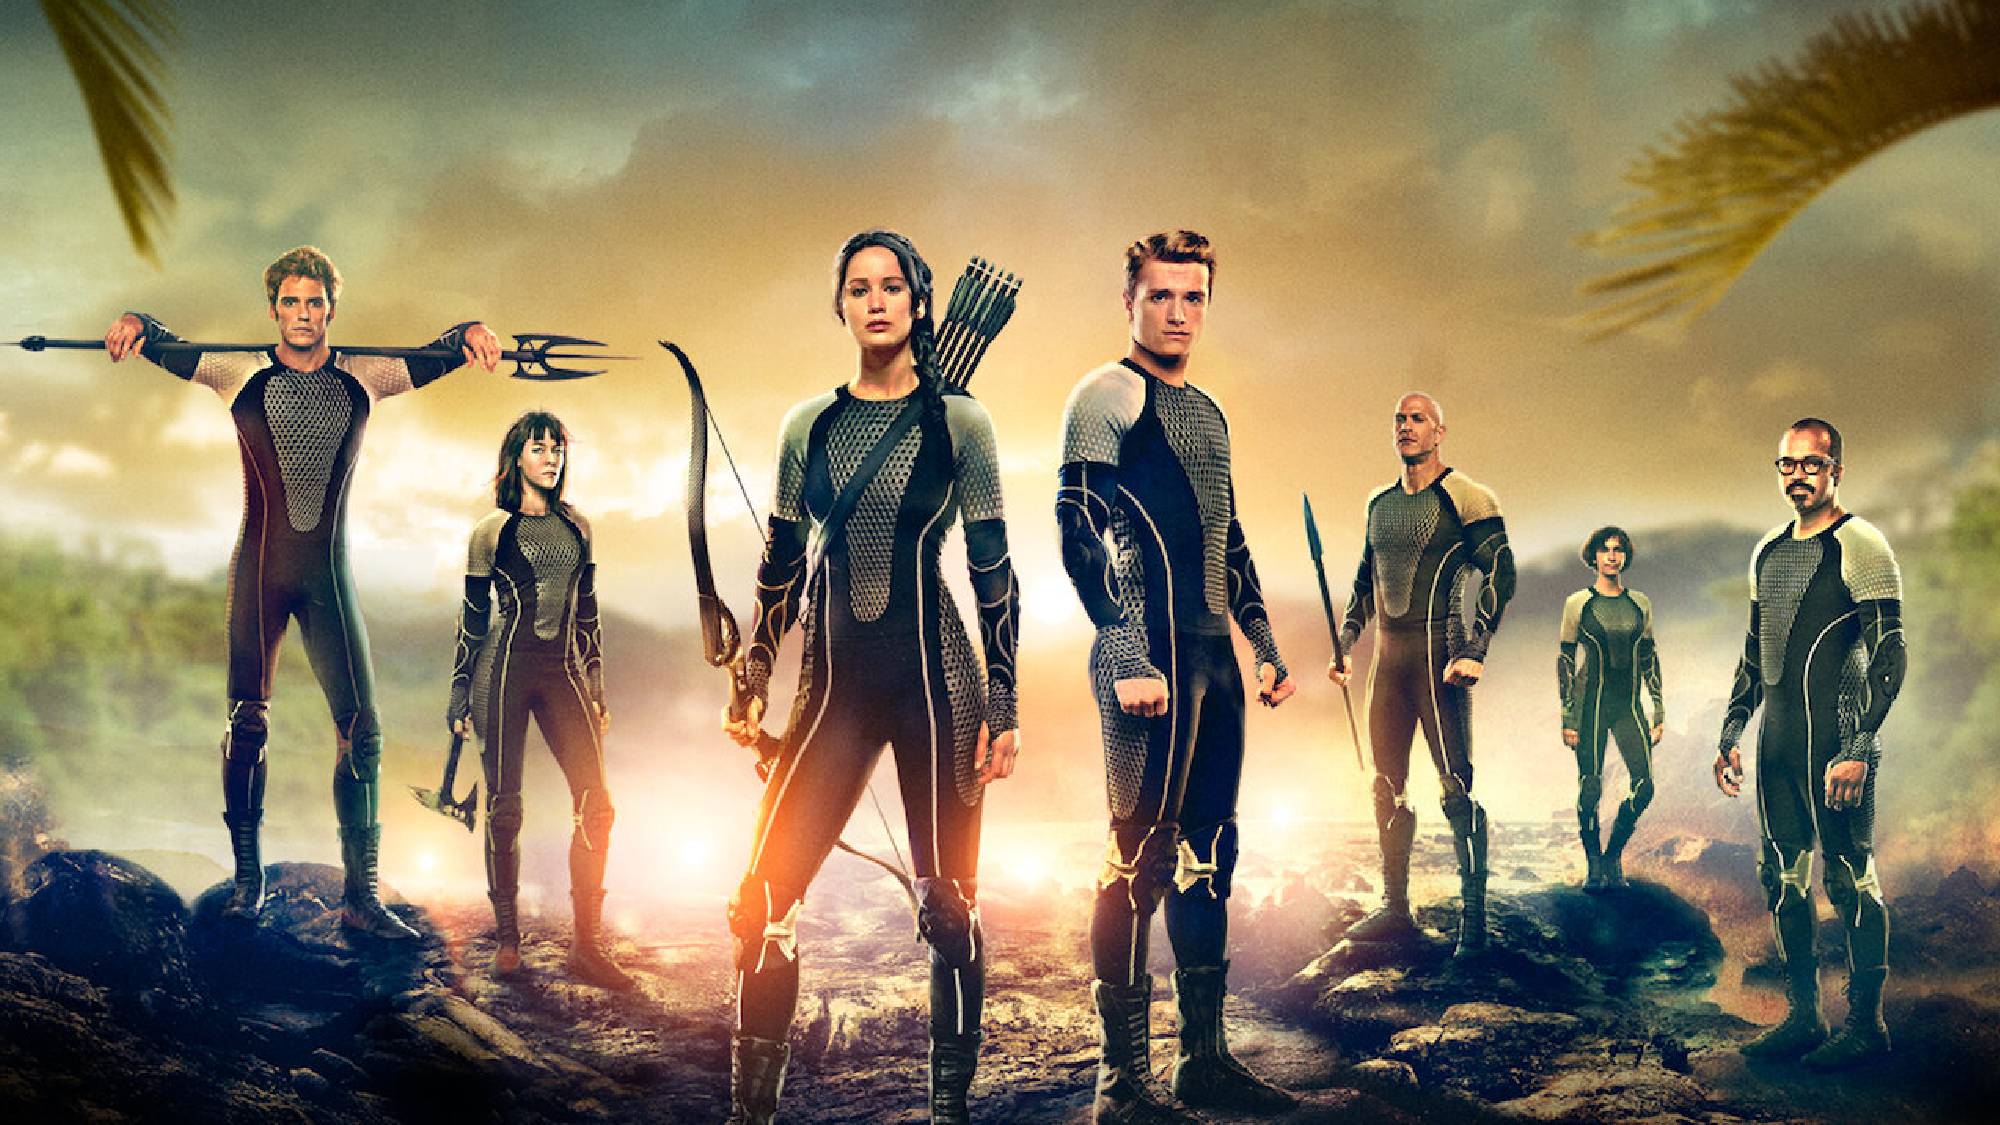 De cast van The Hunger Games: Catching Fire